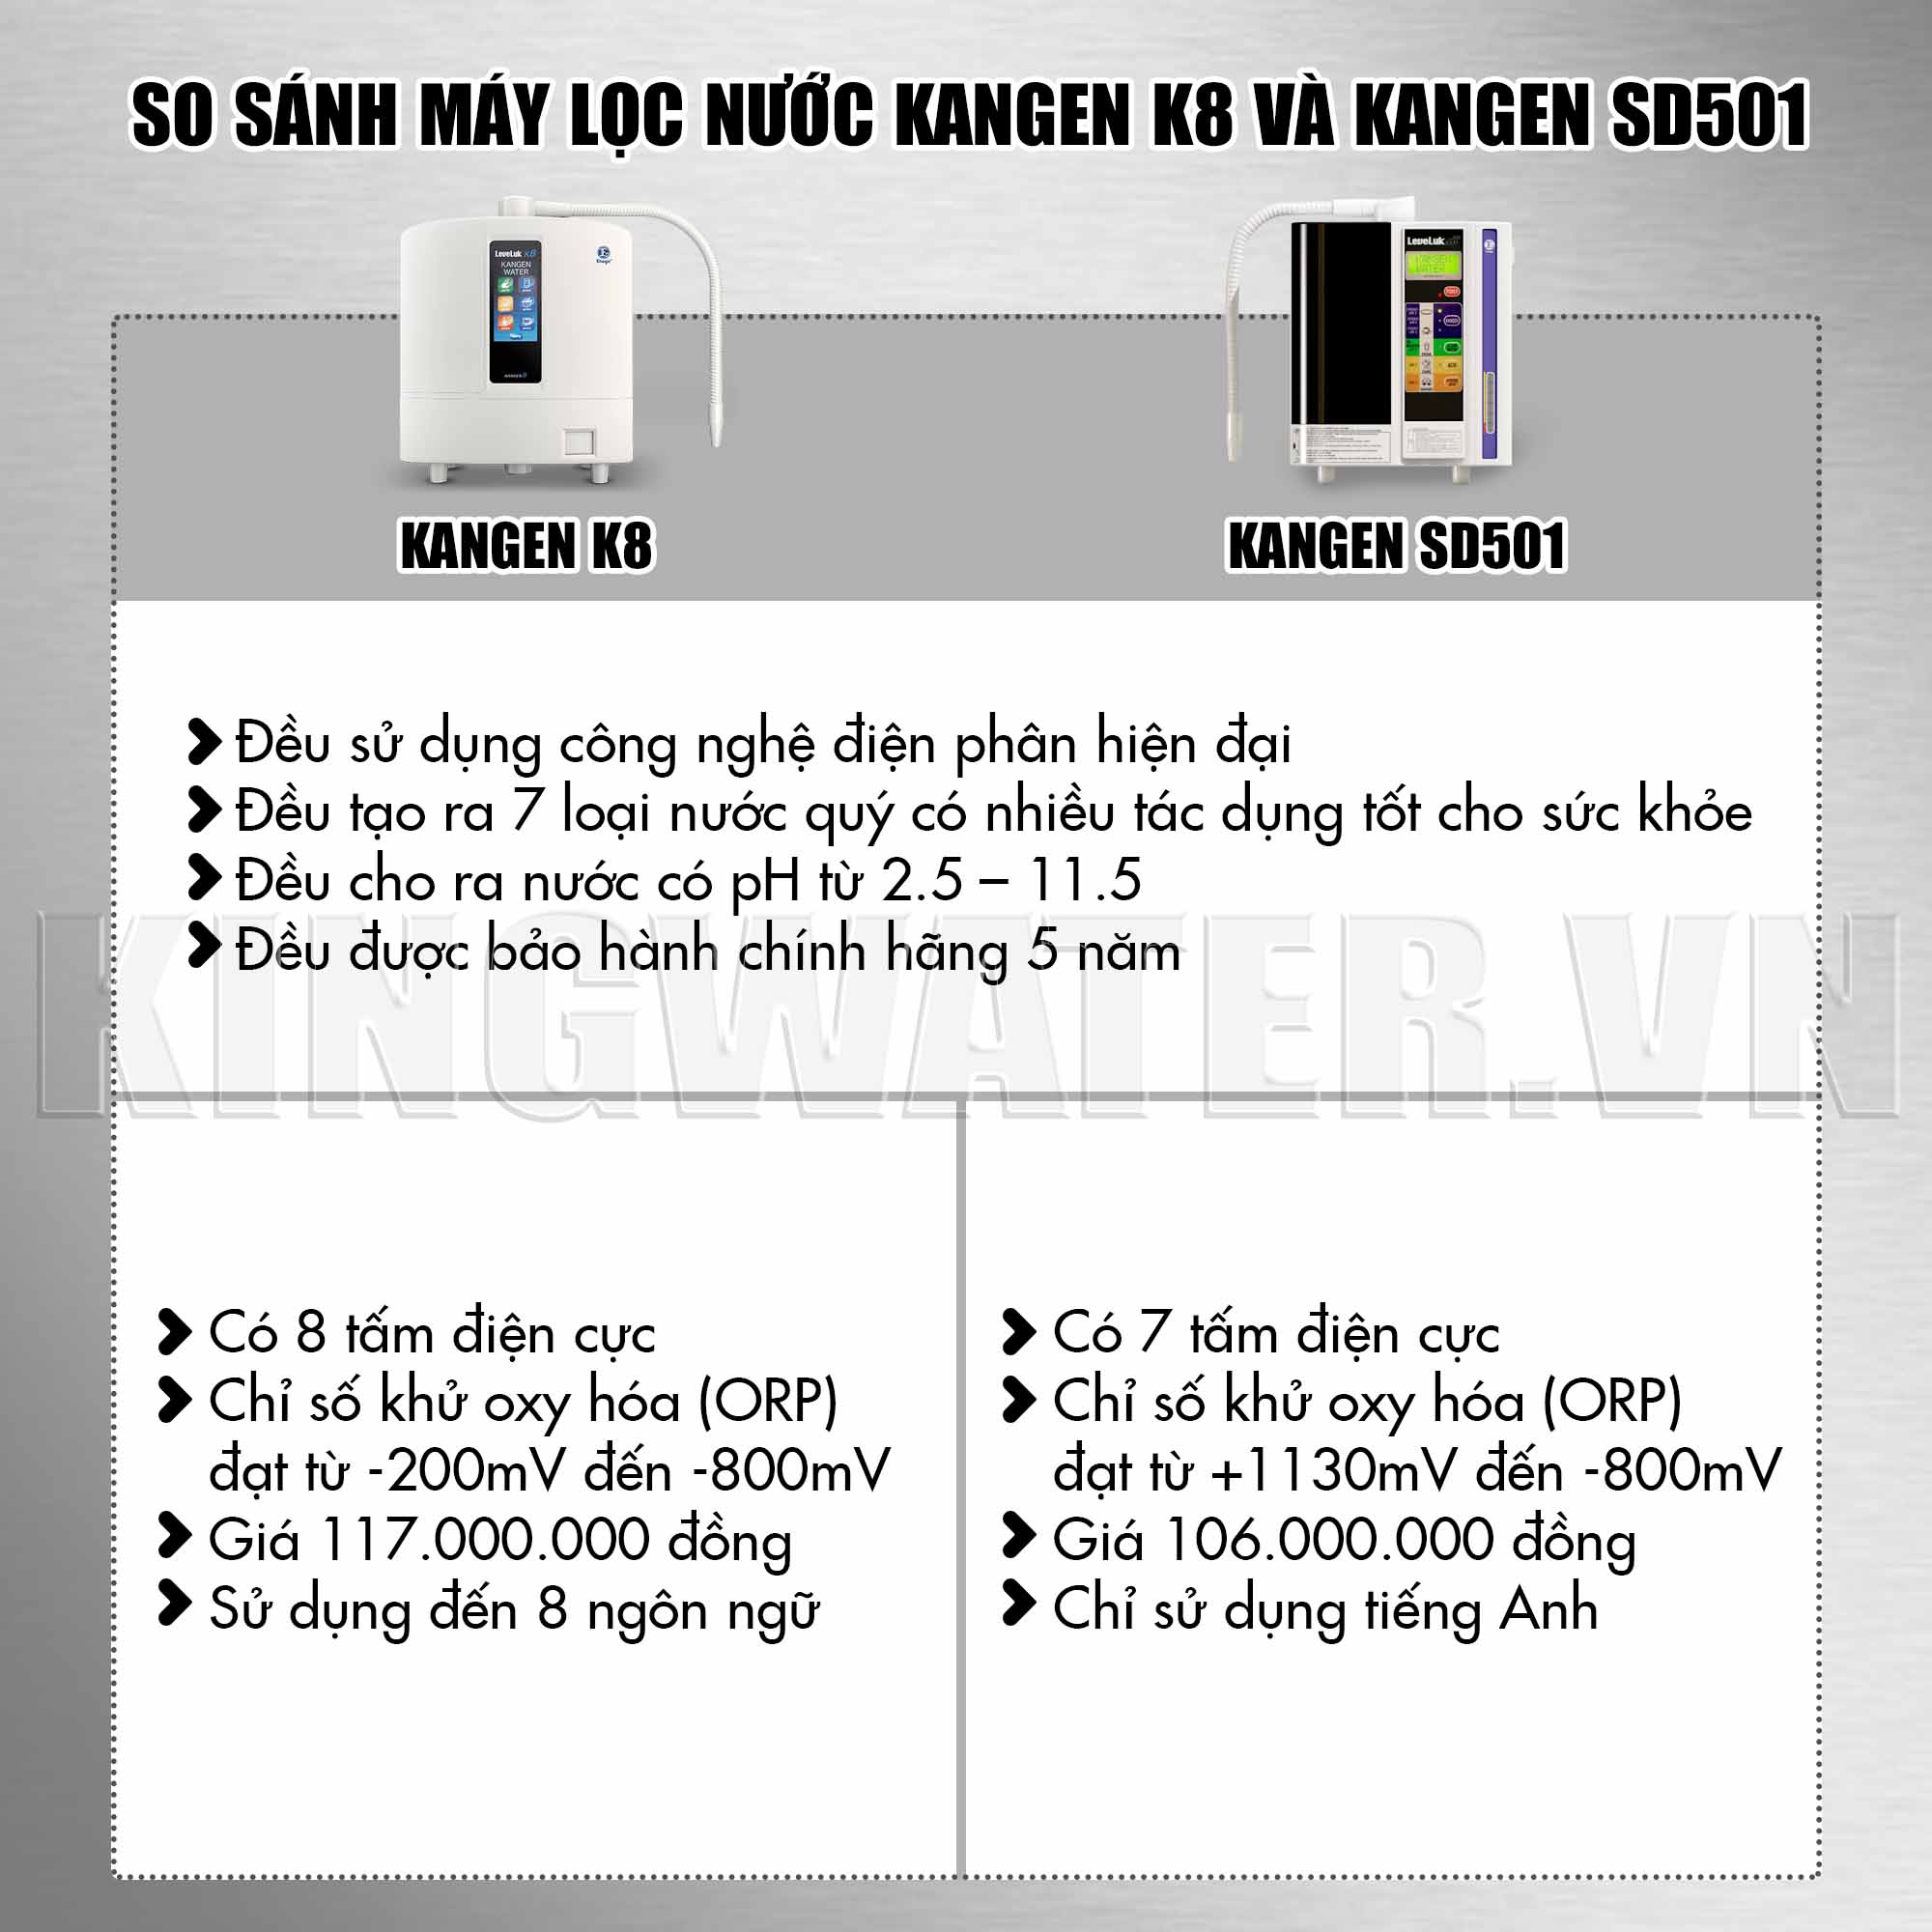 So sánh máy lọc nước Kangen K8 và Kangen SD501